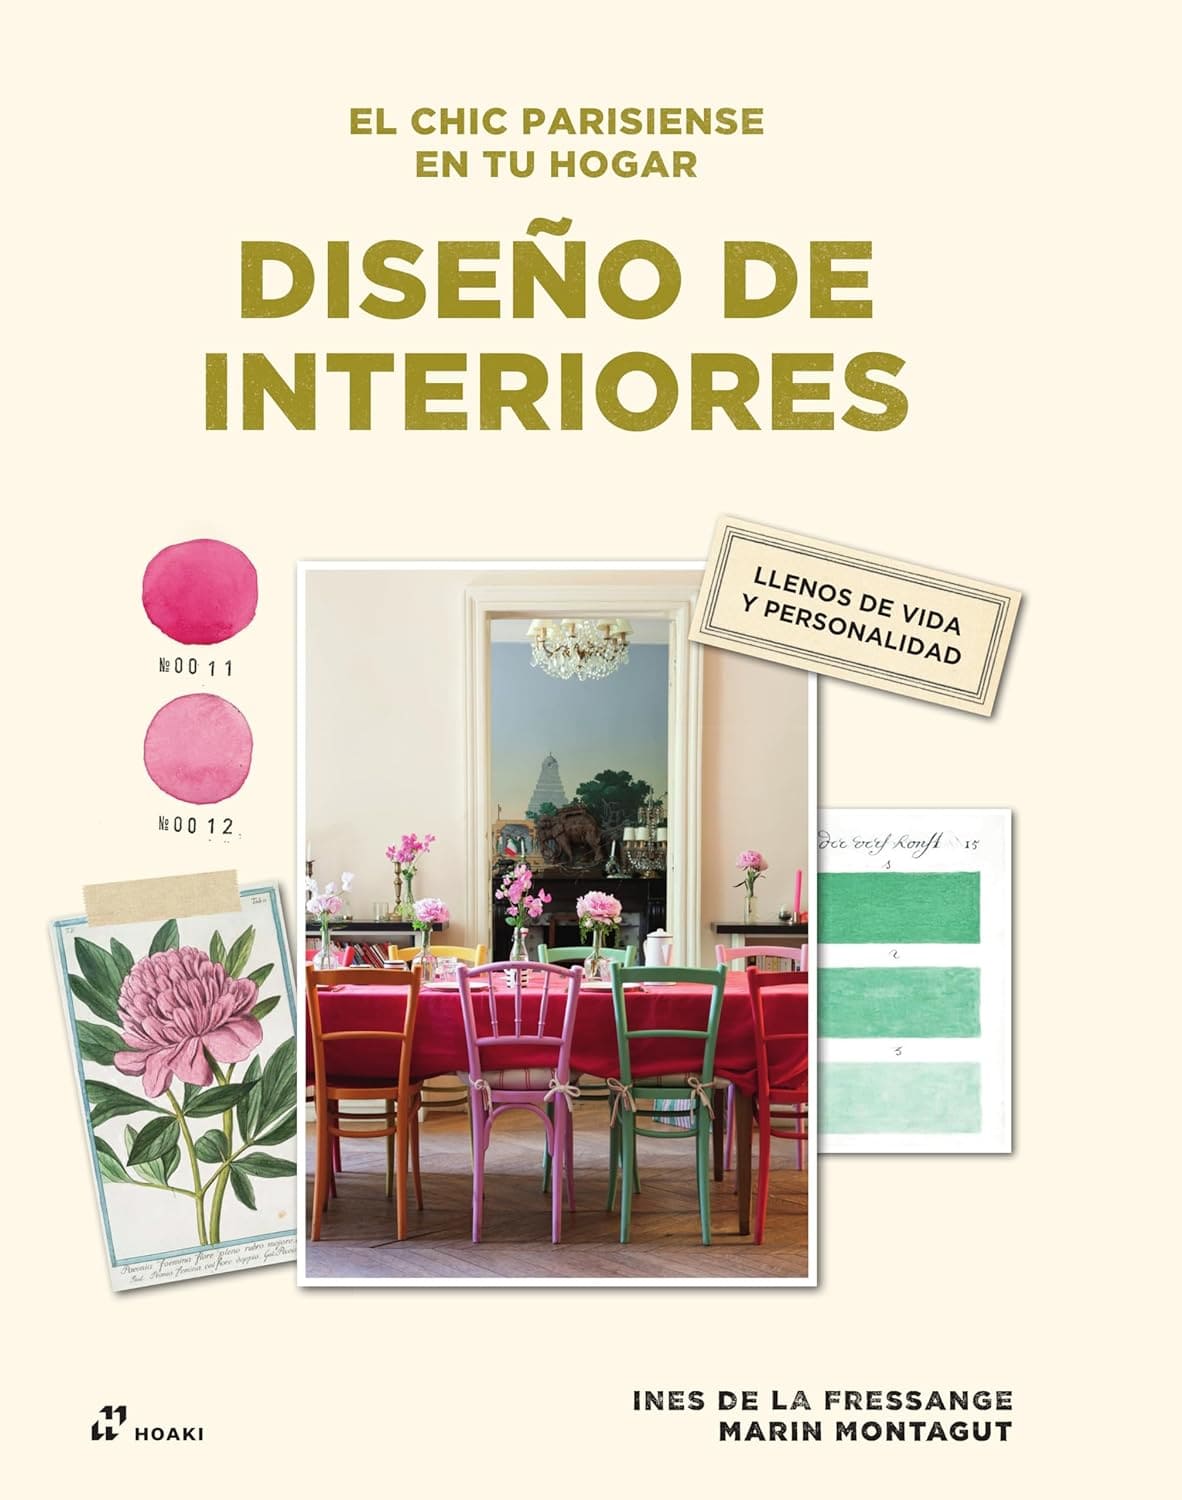 El chic parisiense en tu hogar: diseño de interiores libro de diseño de interiores